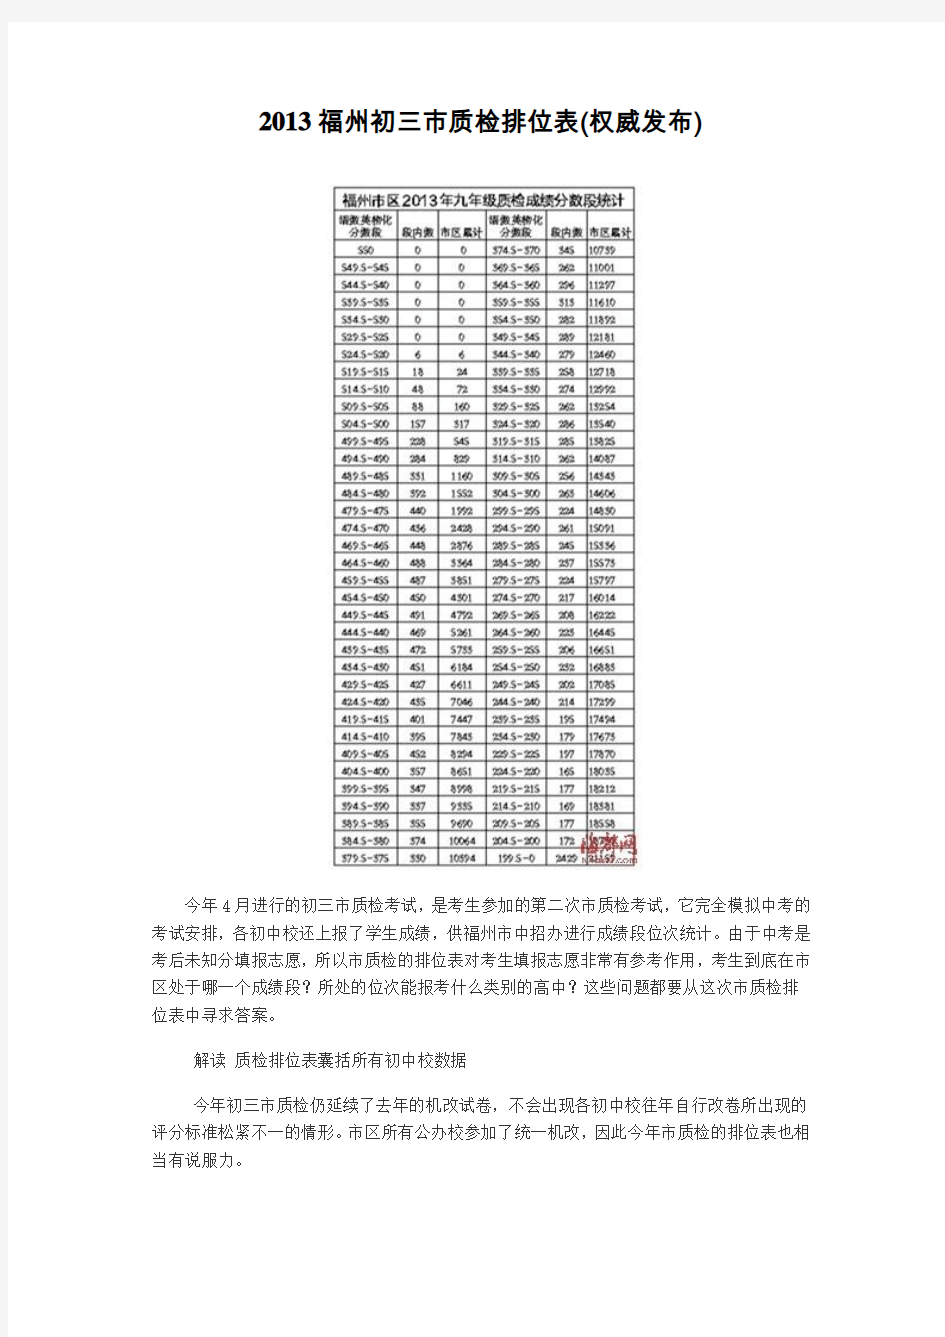 2013福州初三市质检排位表(权威发布)